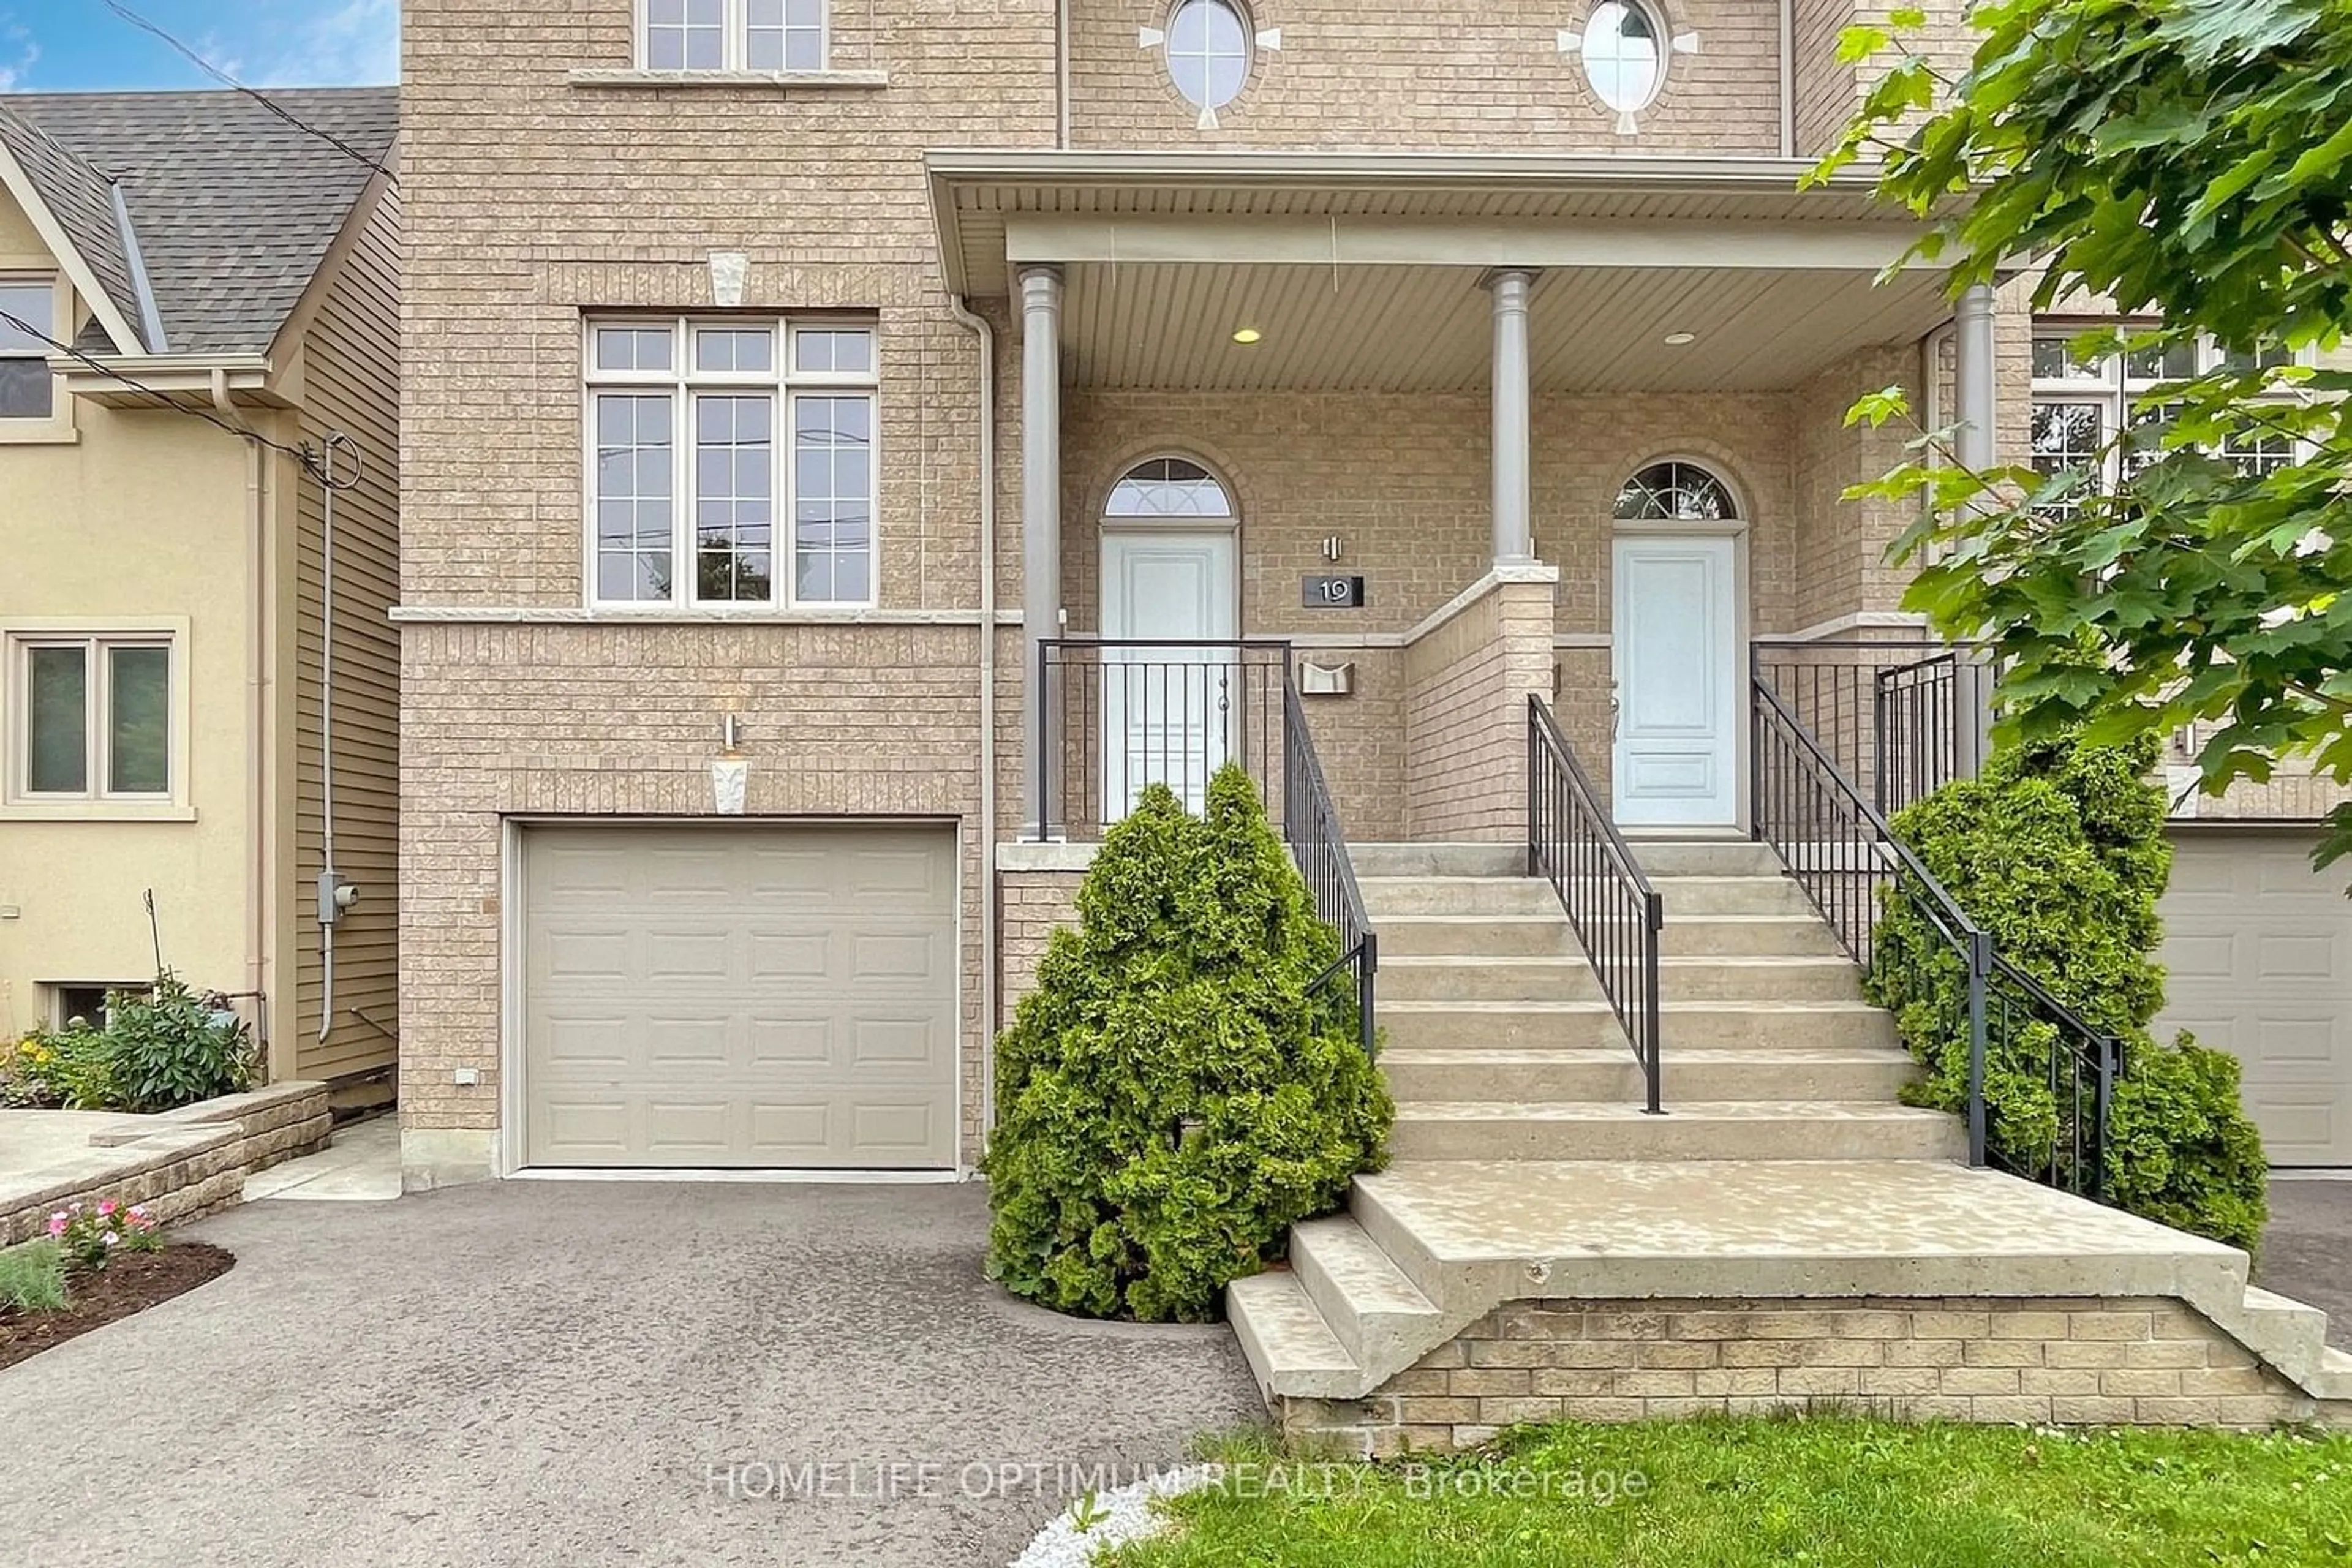 Home with brick exterior material for 19 Twenty Sixth St, Toronto Ontario M8V 3R4